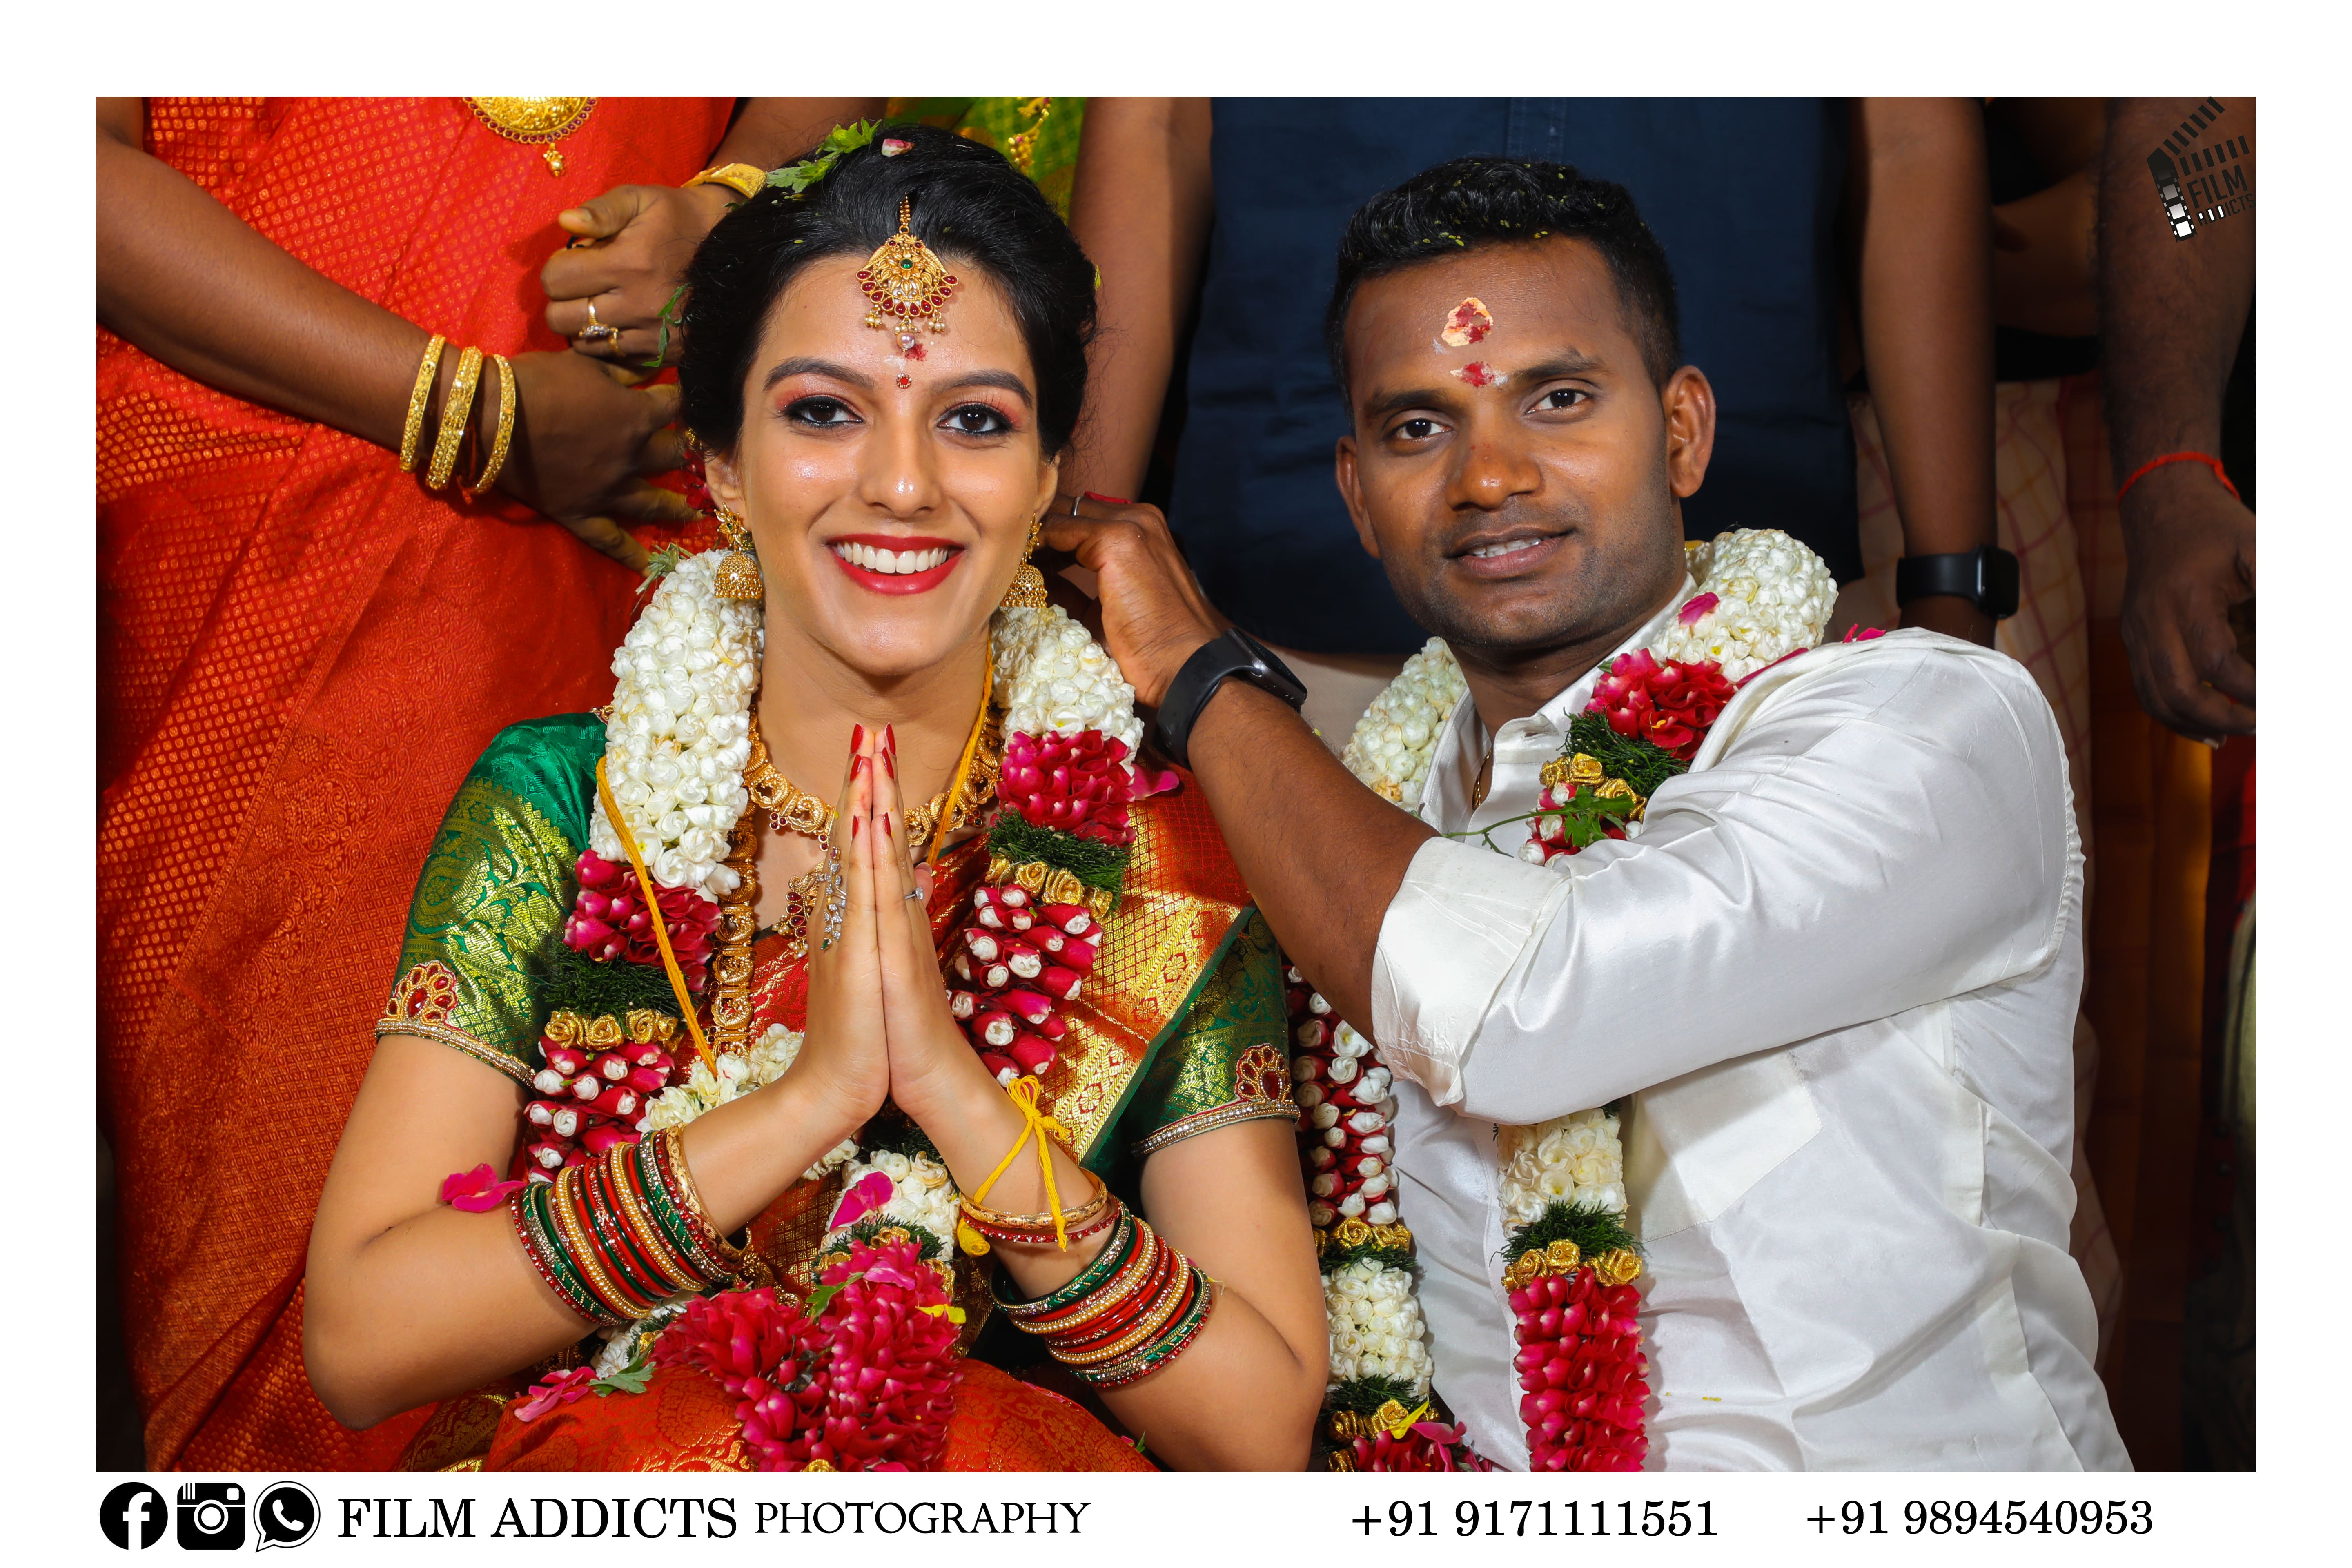 Coimbatore Wedding Planners, Best Wedding Planners in Coimbatore,Wedding Planners in Coimbatore